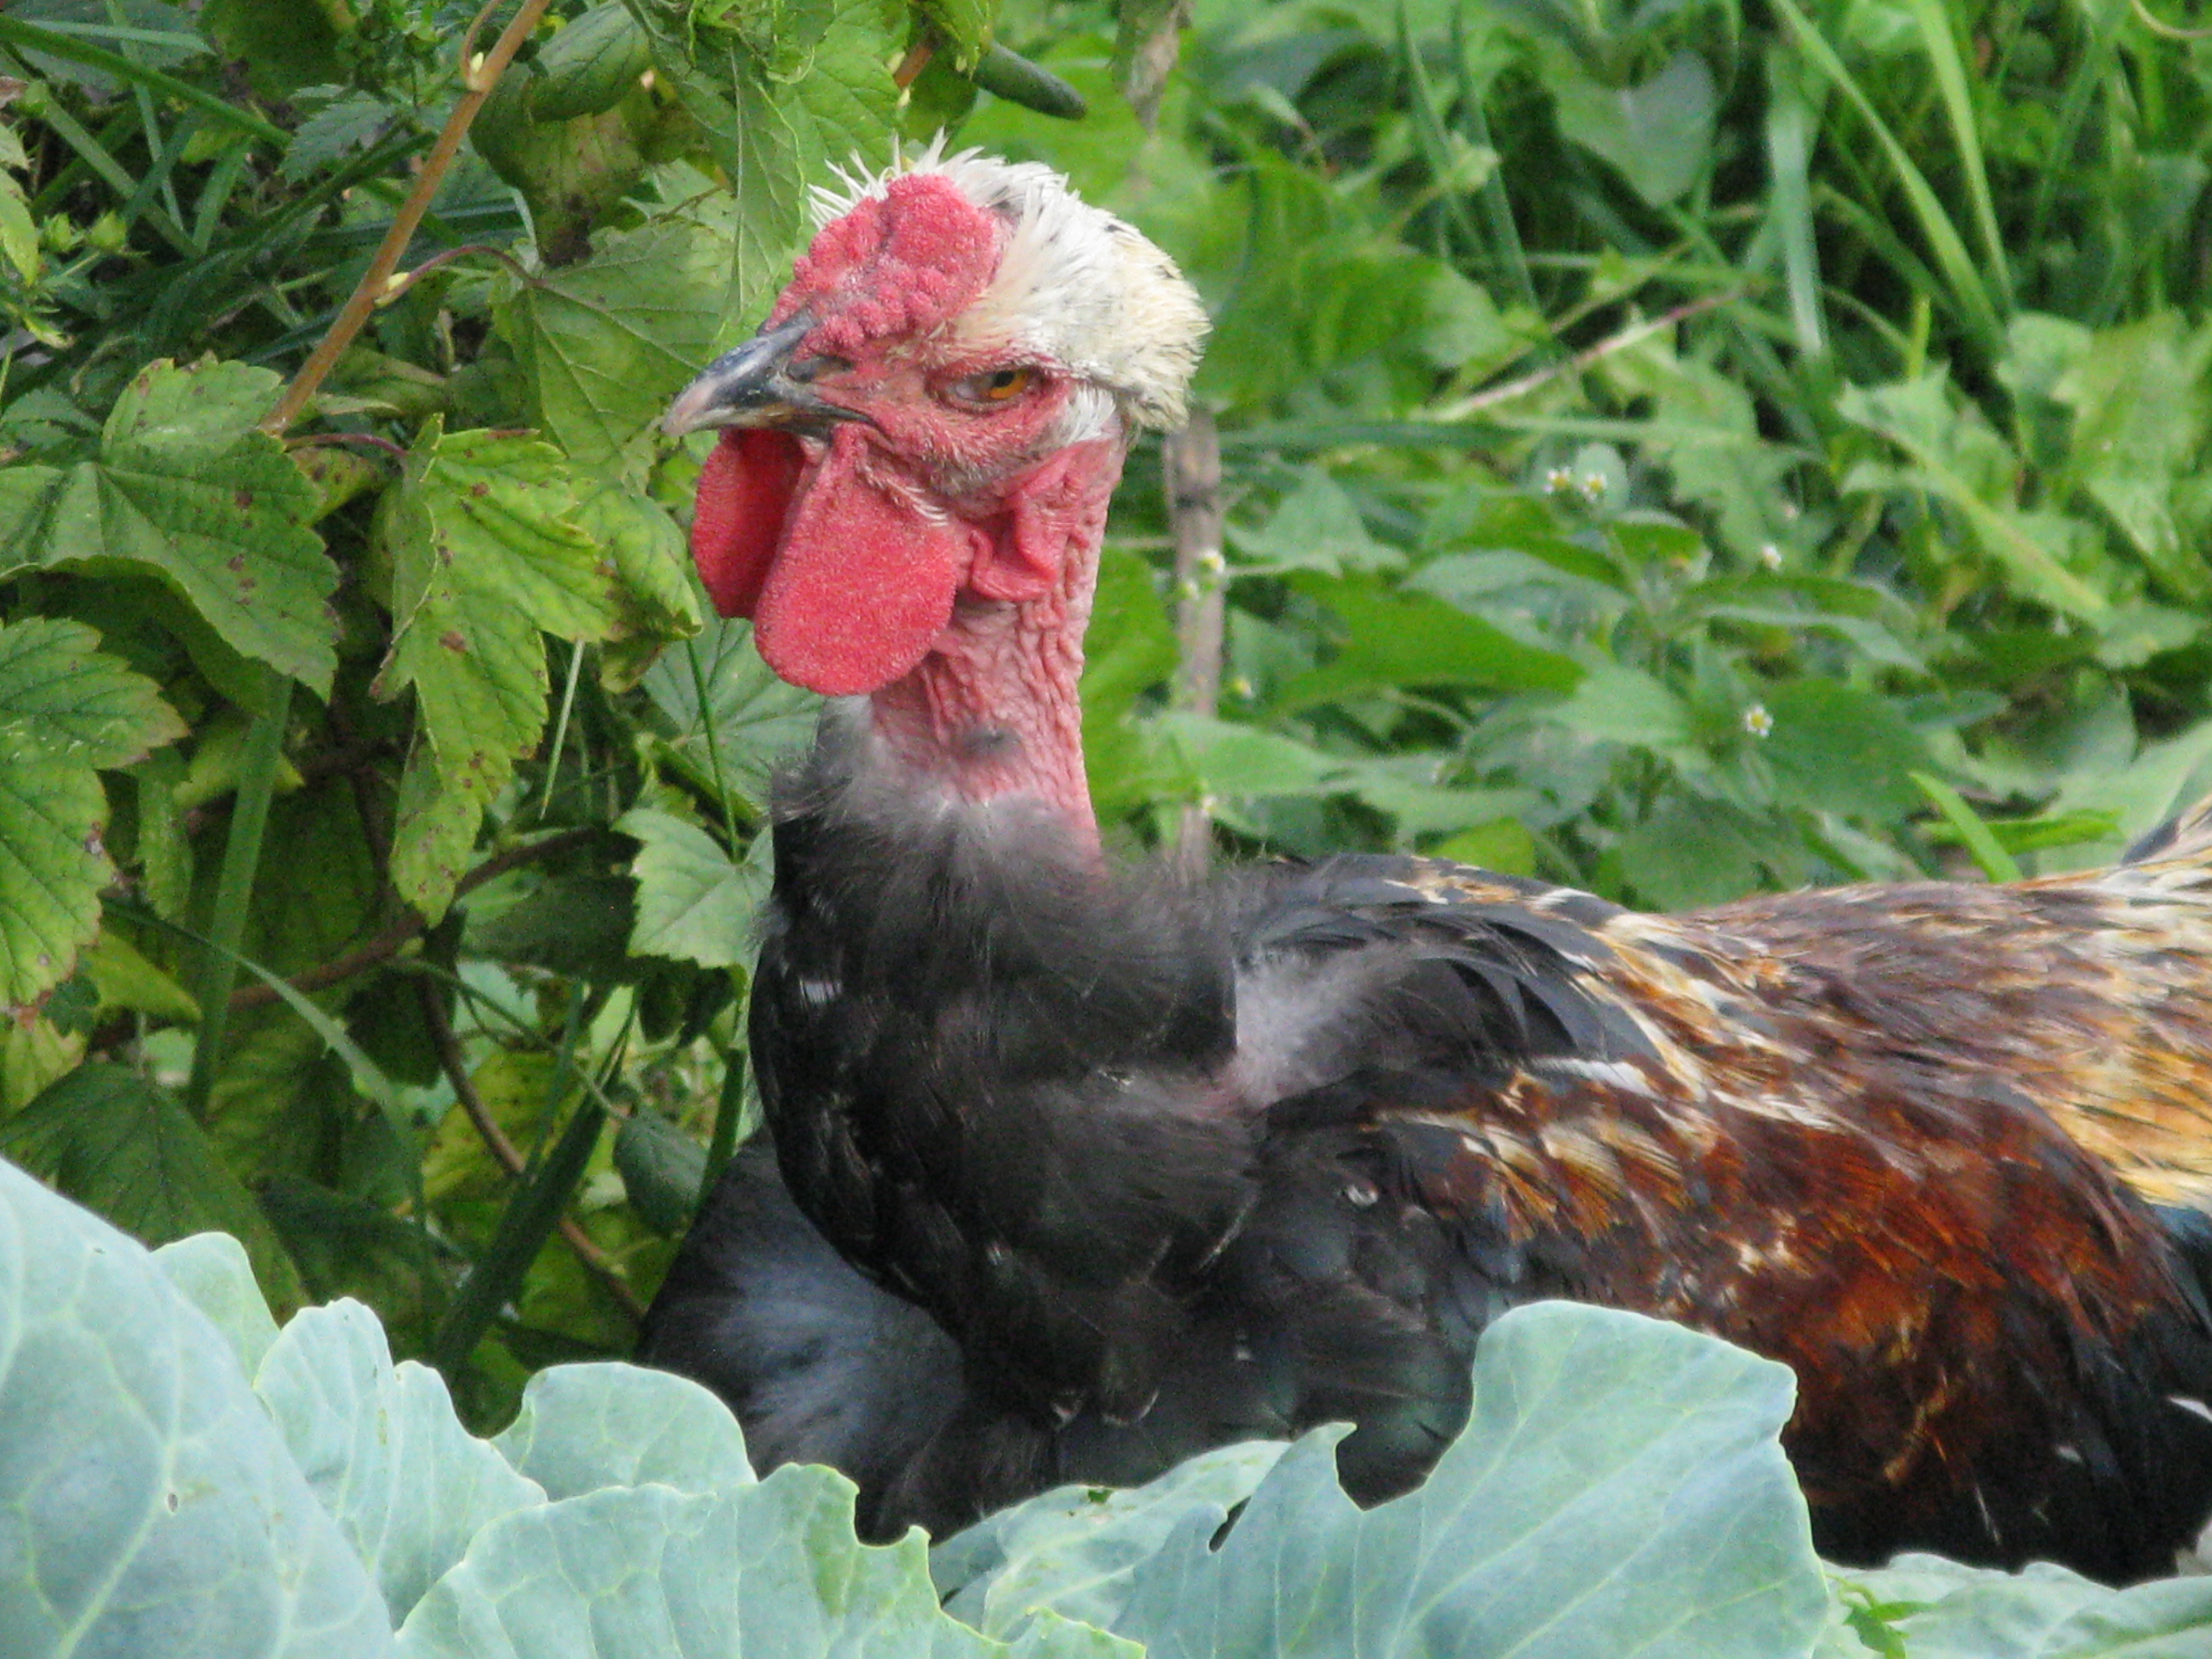 Голошейная - мясо-яичная порода кур. Описание, характеристики, разведение, кормление и инкубация